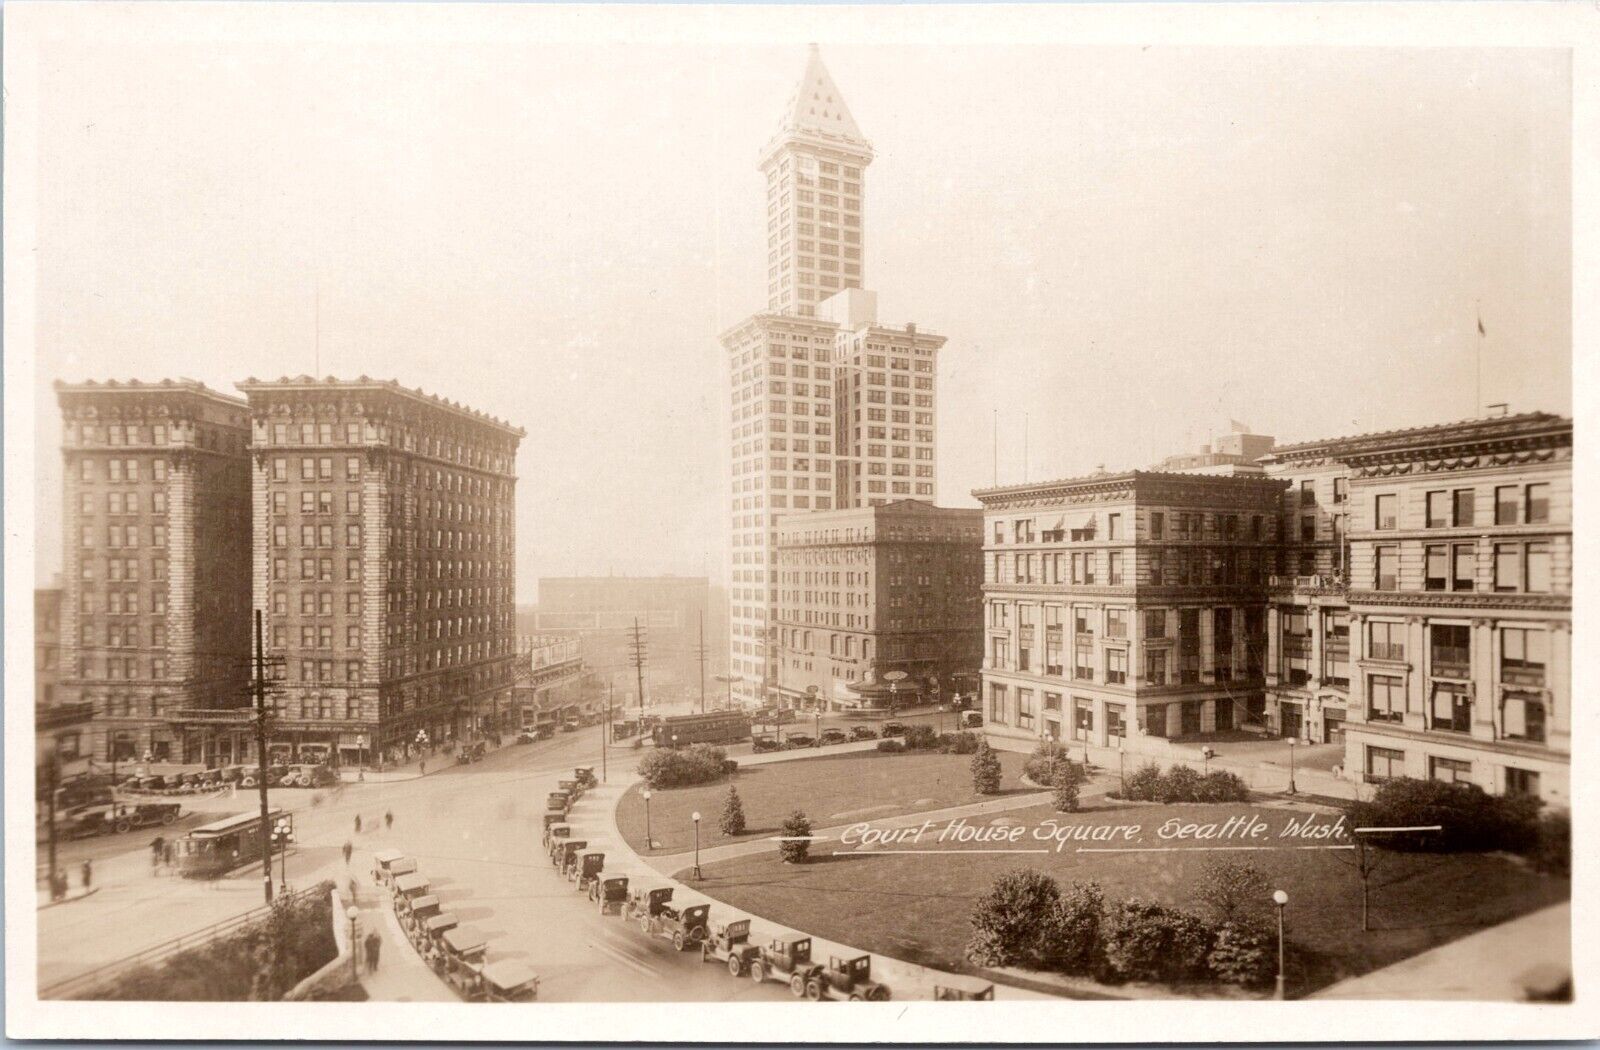 RPPC Courthouse Square, Smith Tower, Seattle Washington - c1920s Photo Postcard